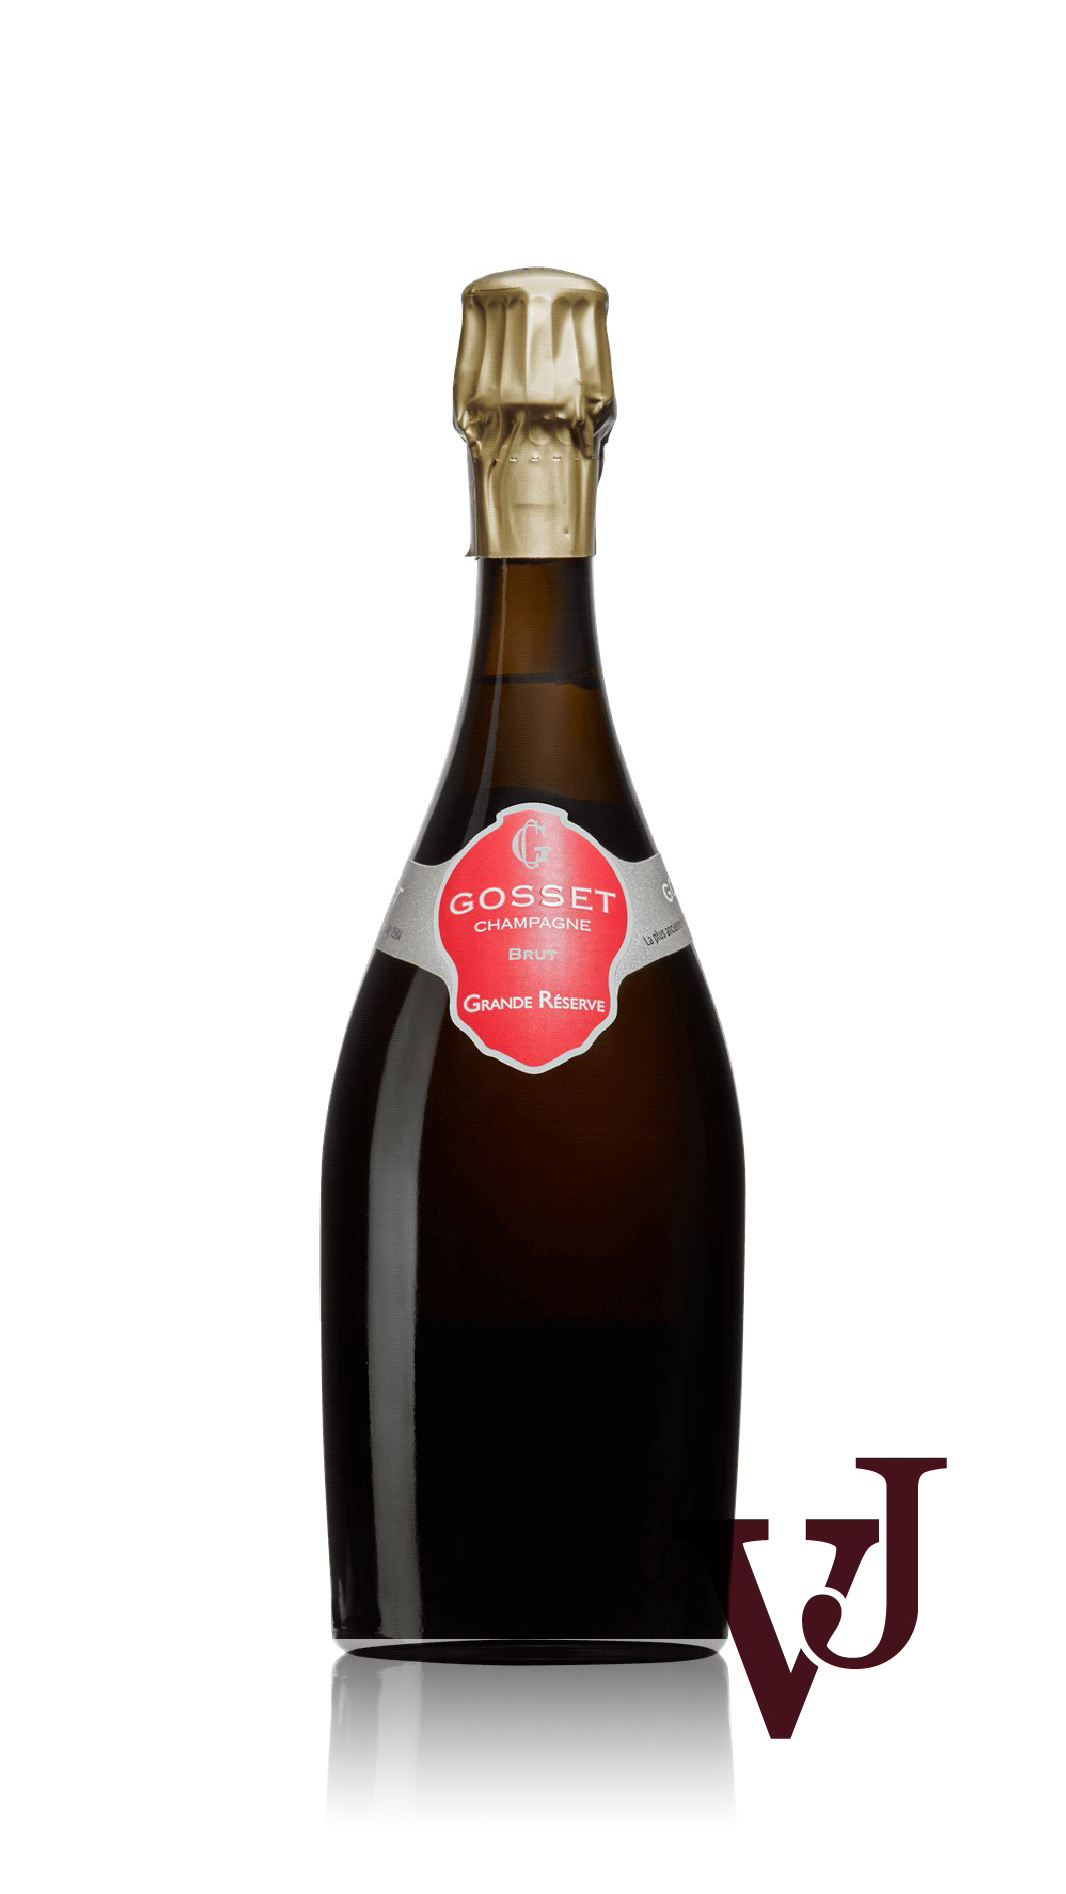 Mousserande Vin - Gosset Grande Réserve Brut artikel nummer 9213101 från producenten Champagne Gosset från området Frankrike